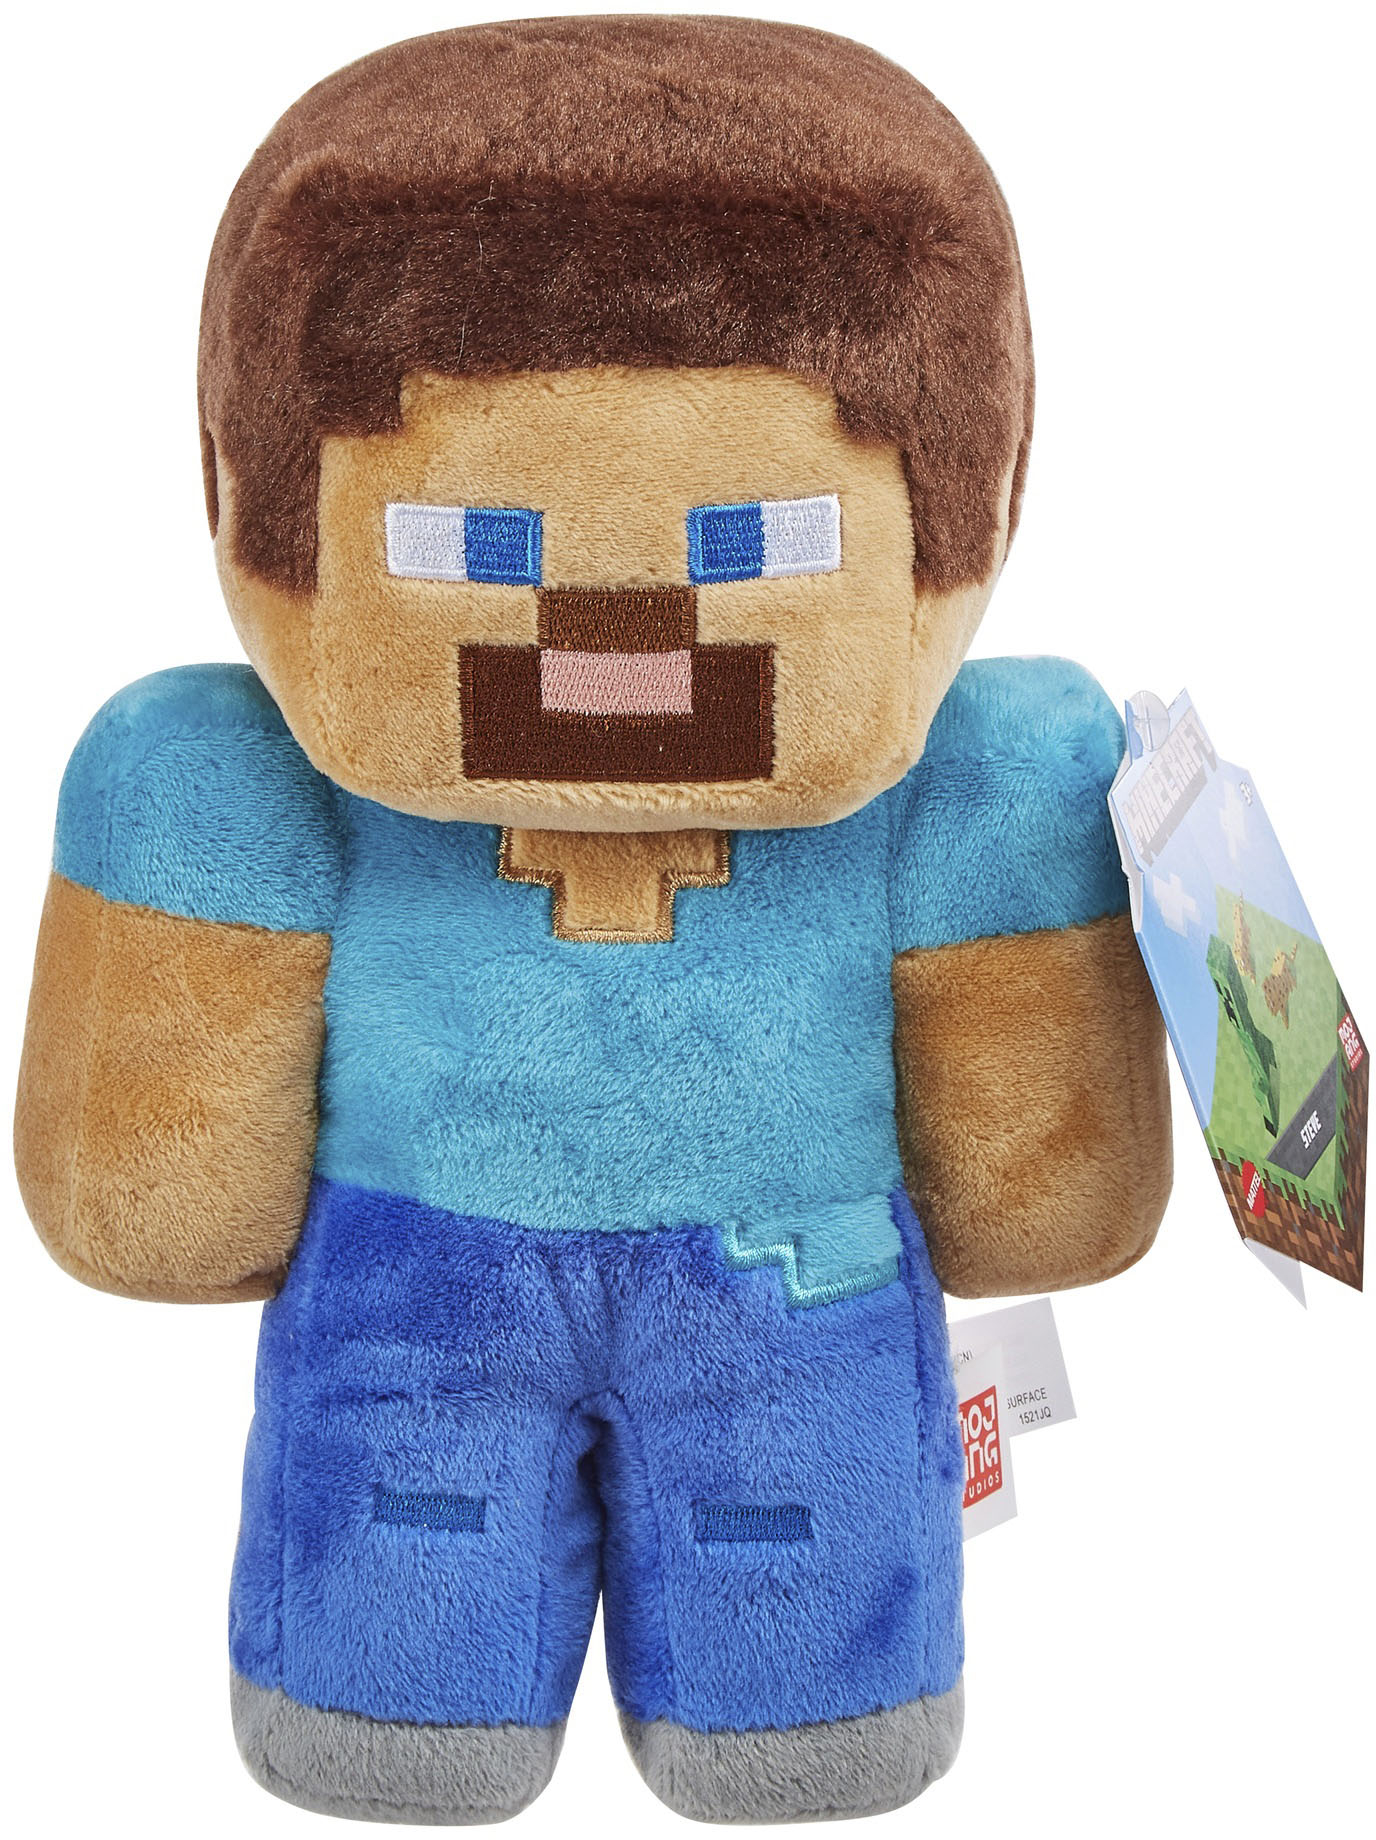 Minecraft Cuutopia Plush, 10-inch Creeper Soft Doll